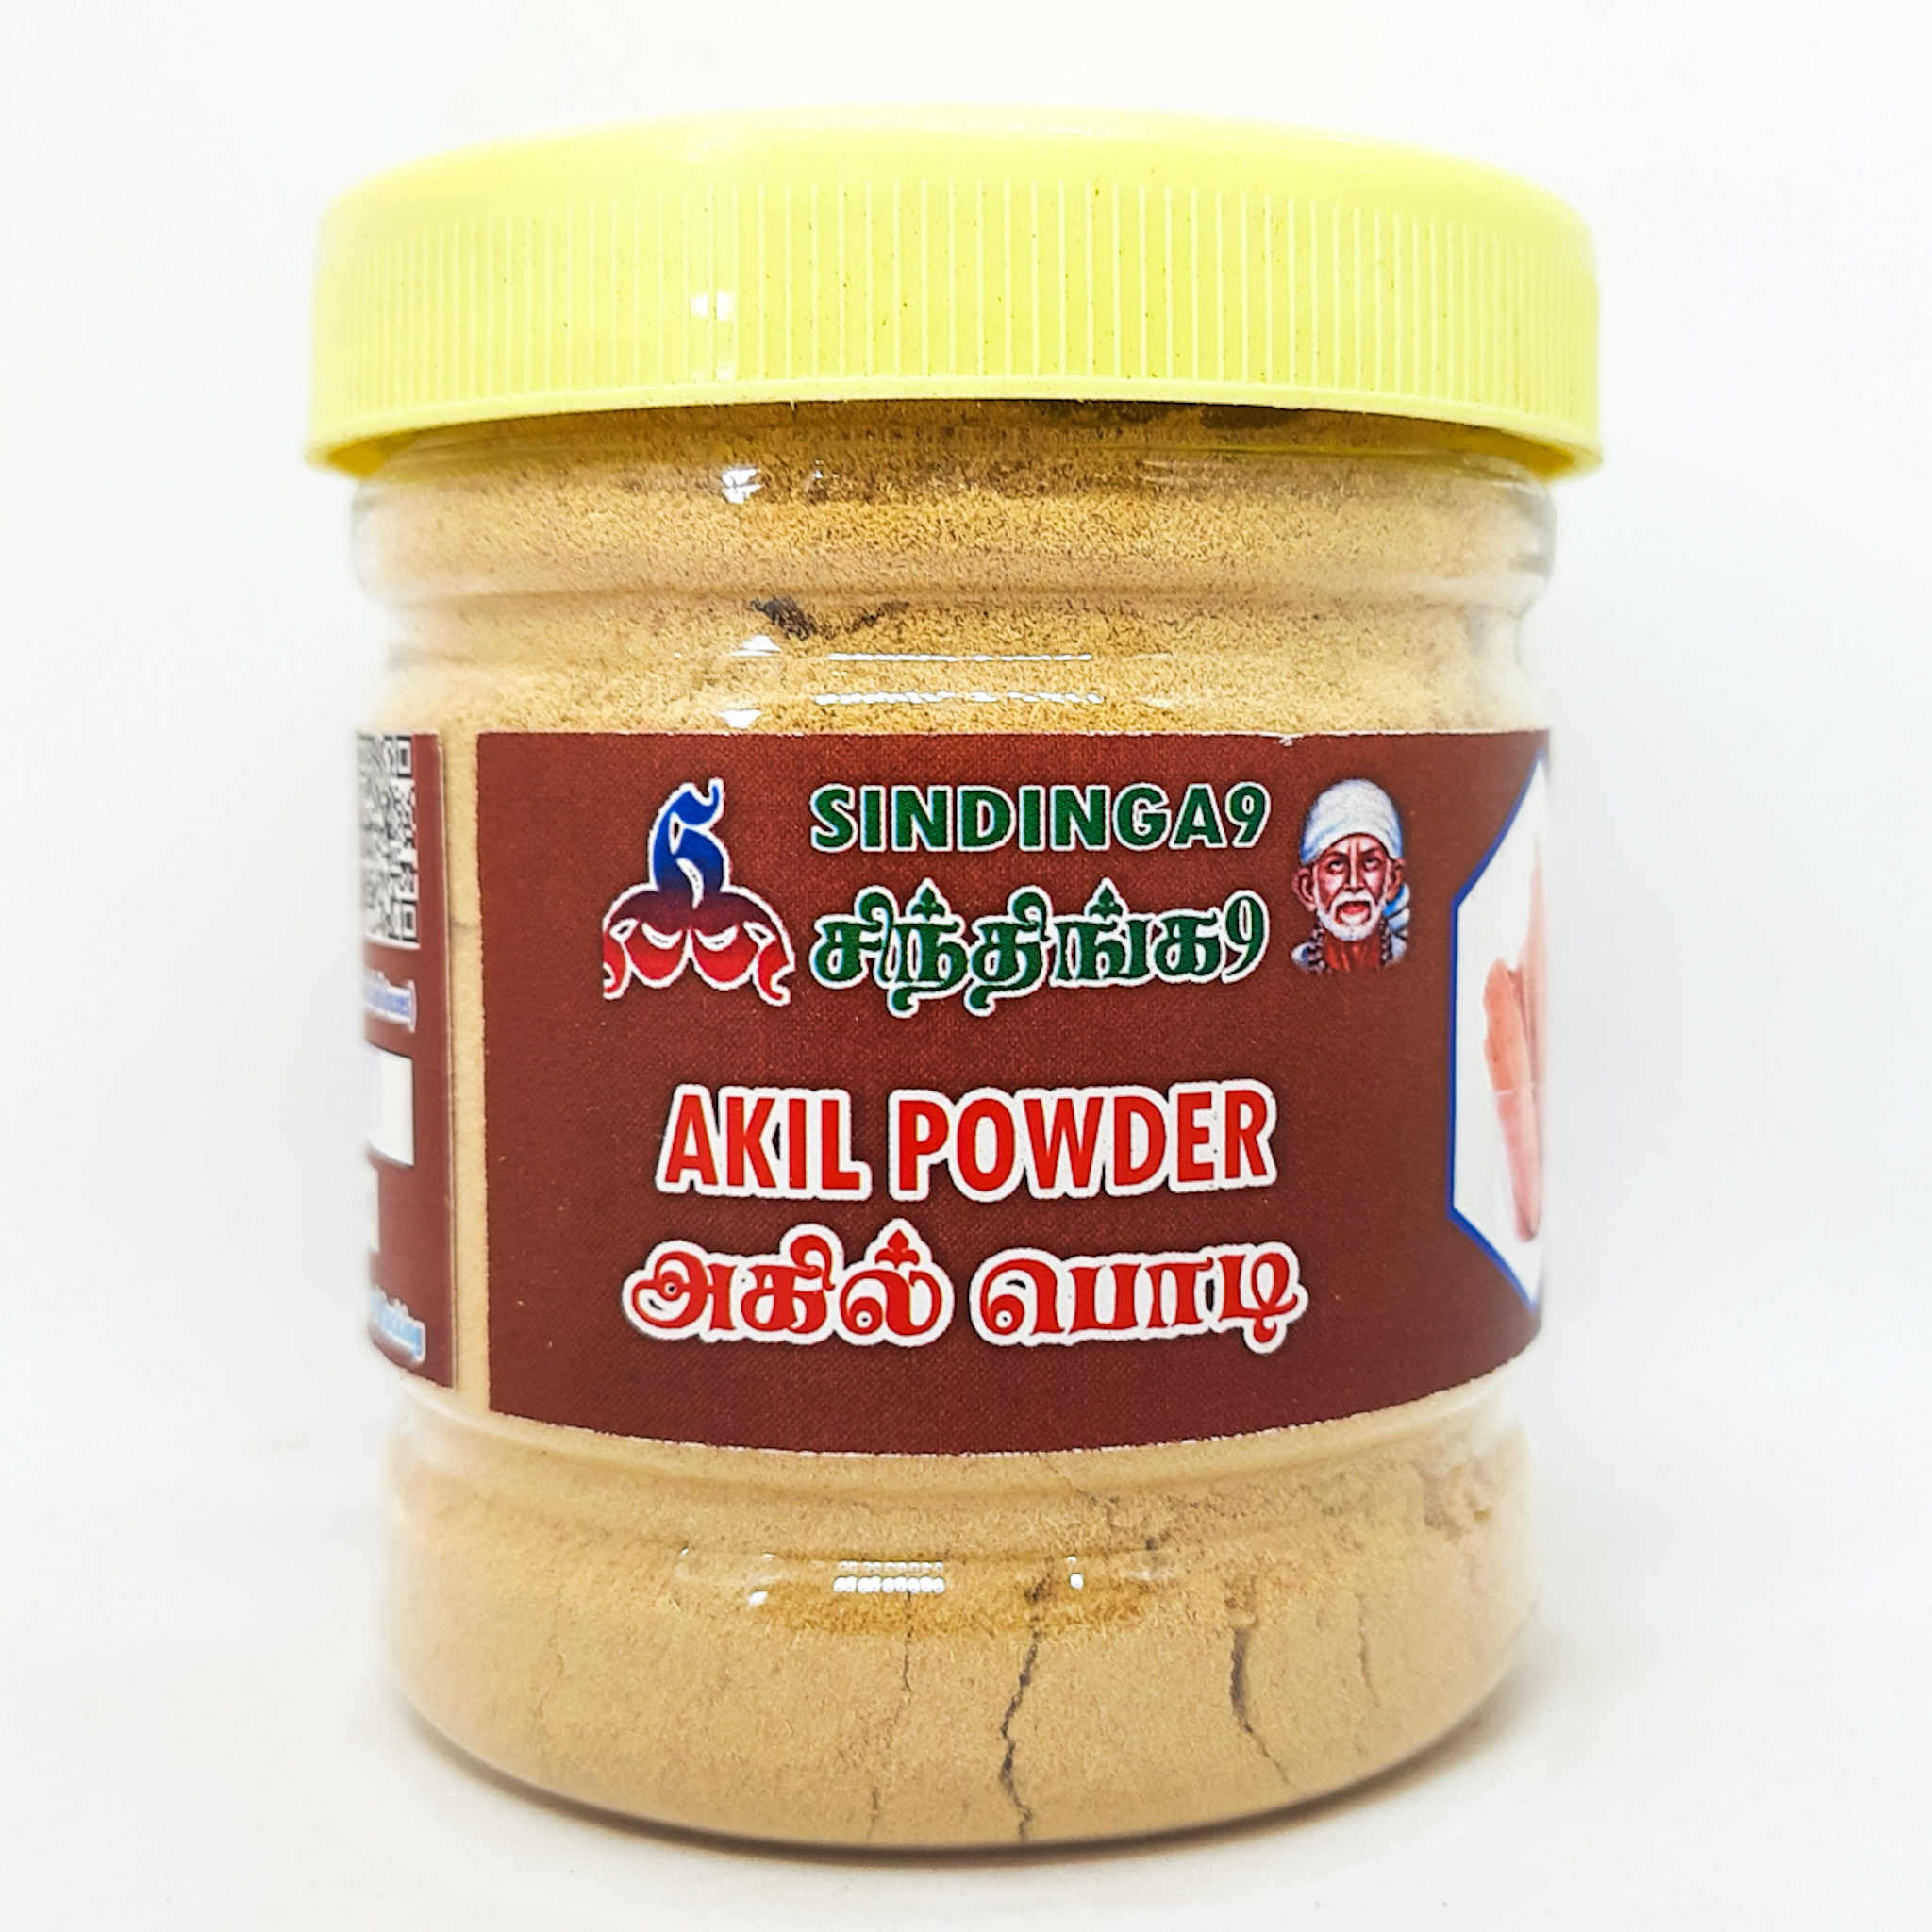 Agil powder